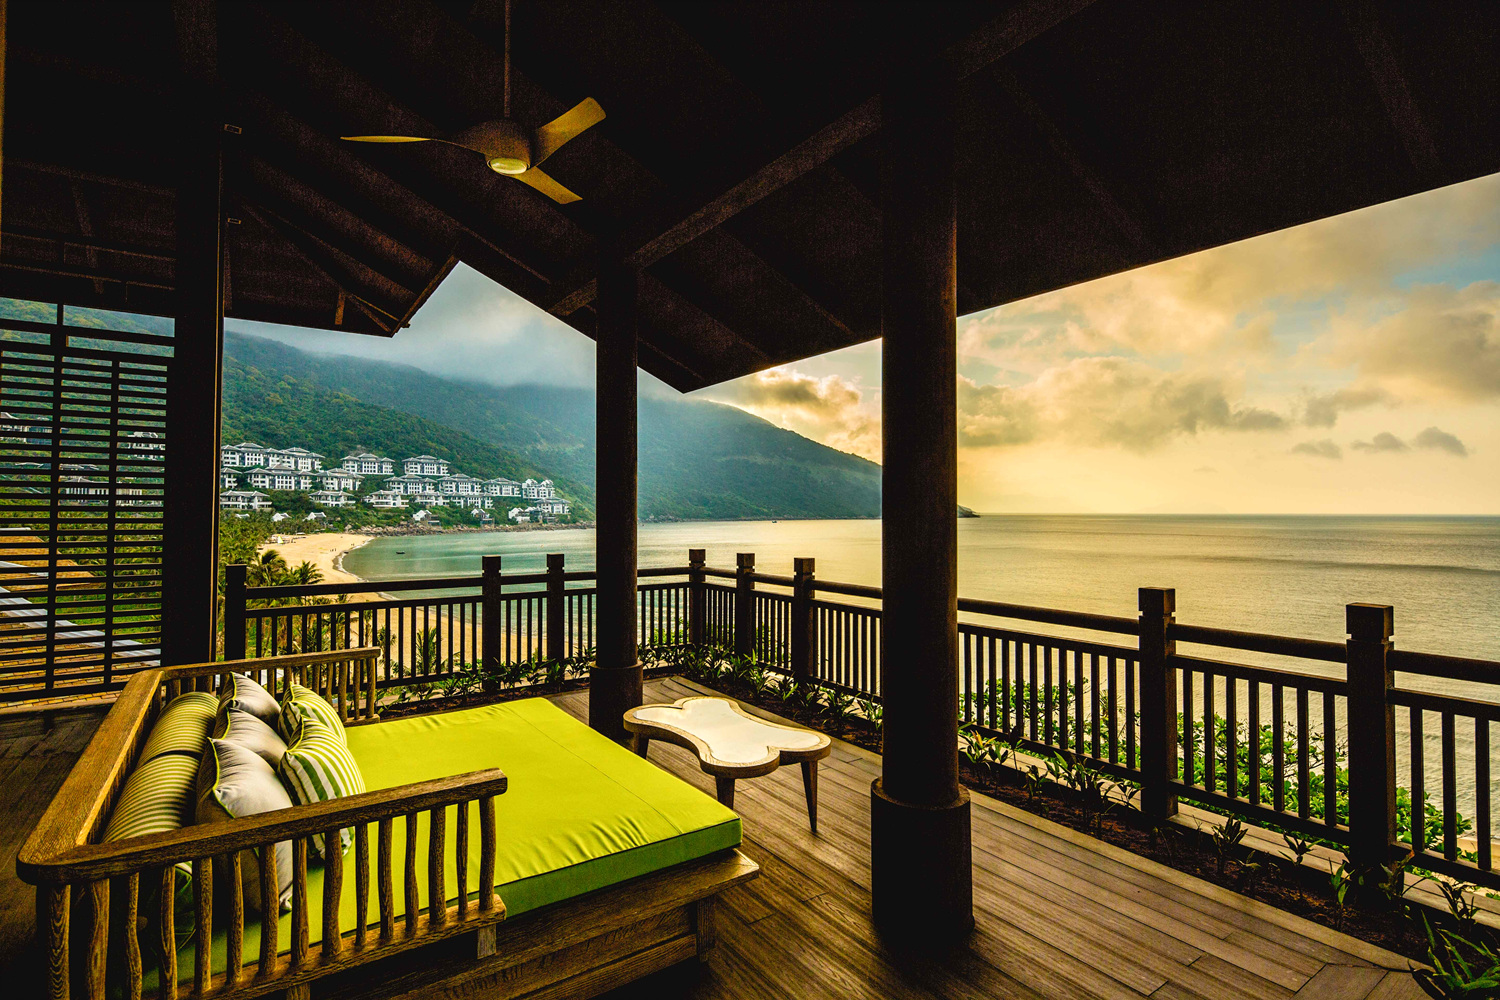 InterContinental Danang Sun Peninsula Resort có 197 phòng, tất cả đều hướng biển, cửa rộng và thoáng hết cỡ để giao hòa với không gian khoáng đạt của thiên nhiên.